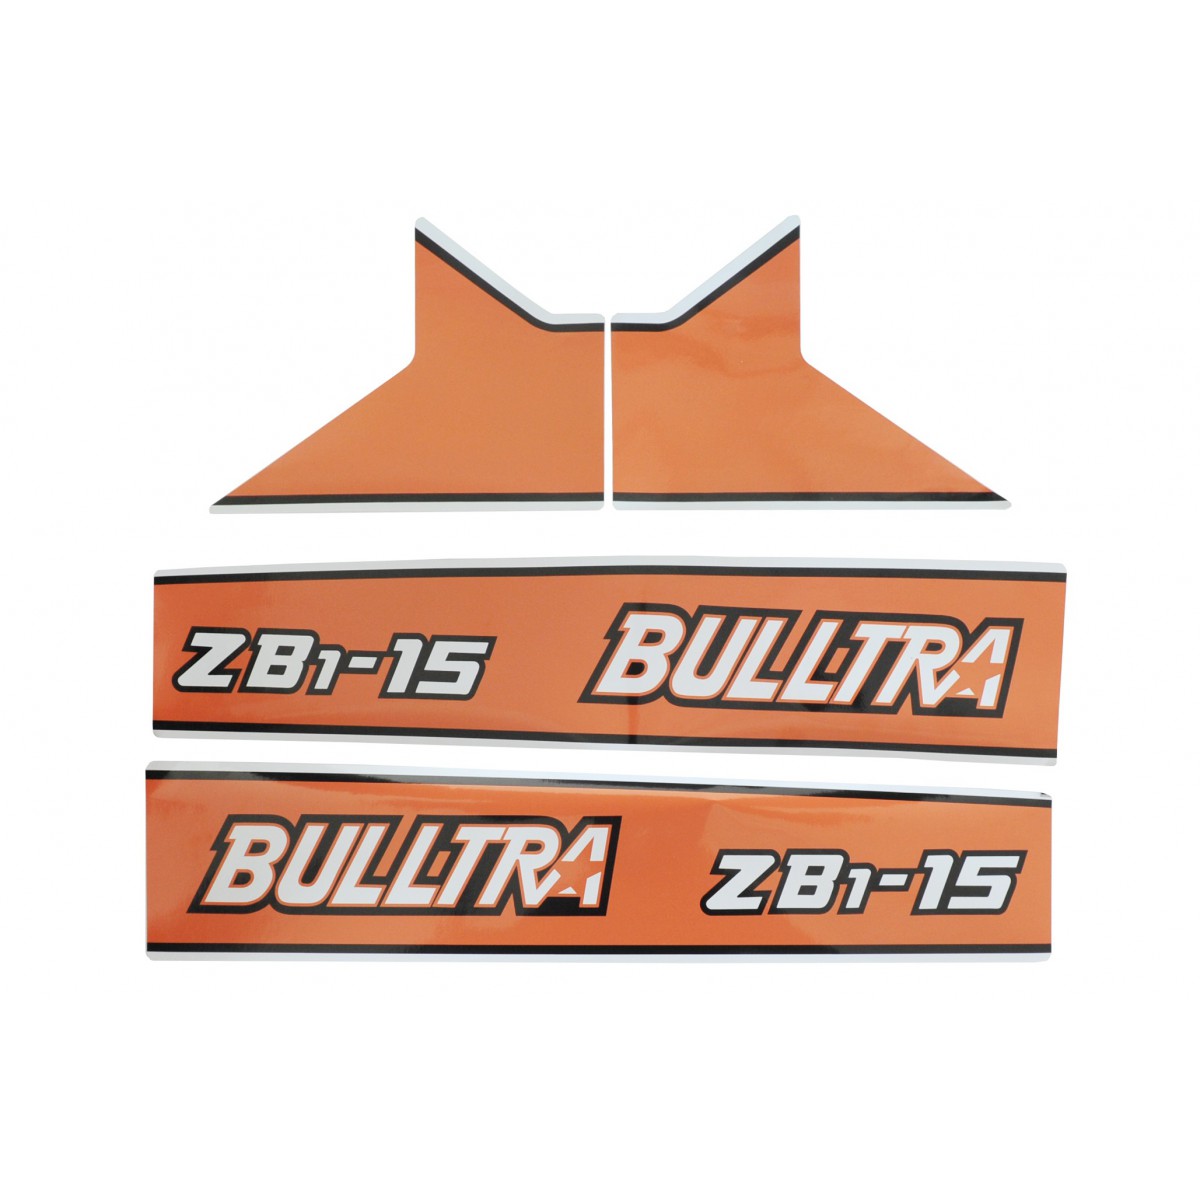 Samolepky Kubota Bulltra B1-15, ZB1-15